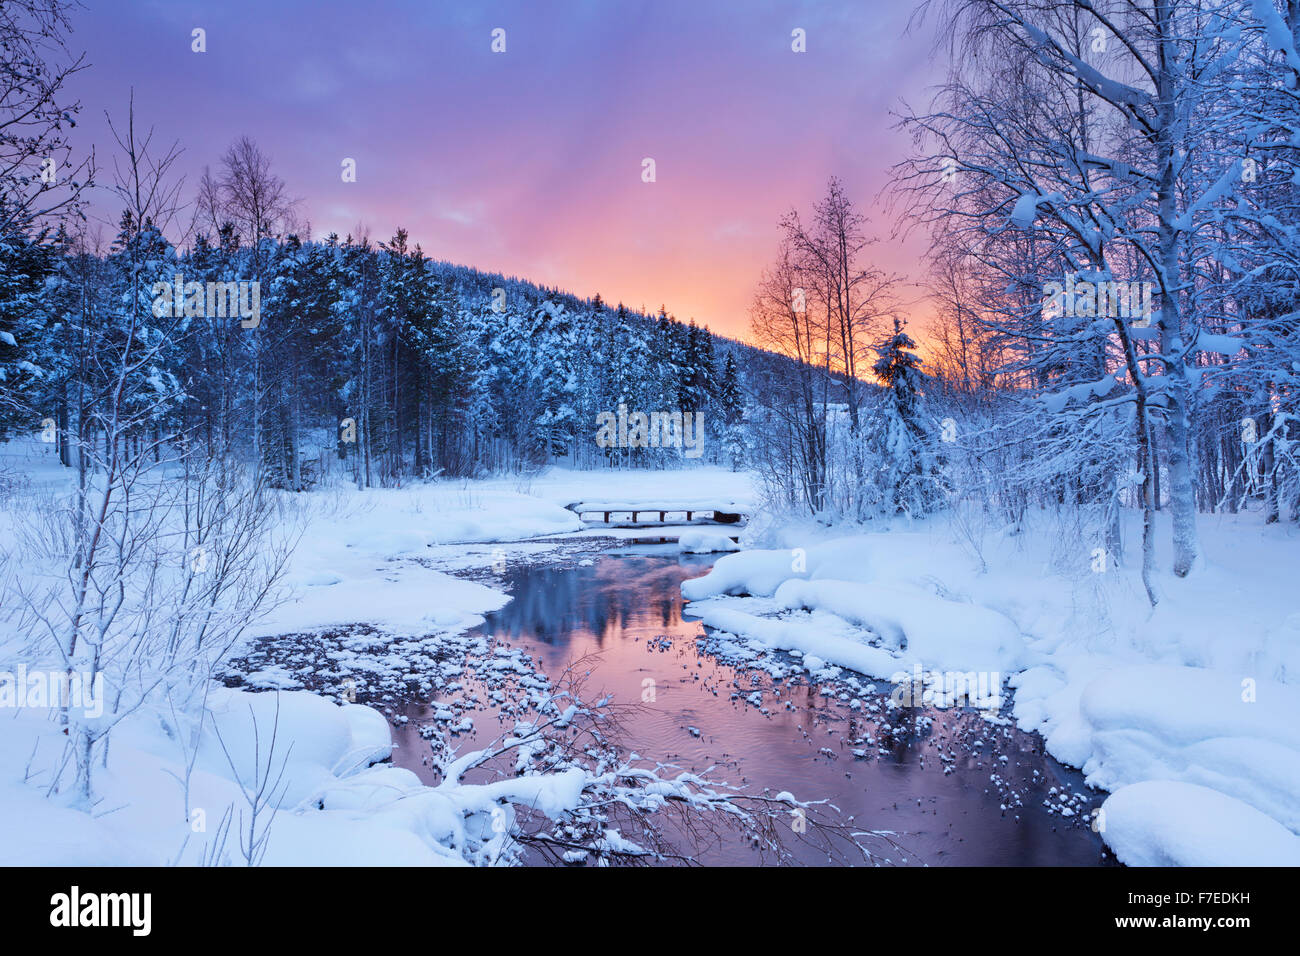 Un río congelado en un paisaje invernal. Fotografiado cerca de Levi, en la Laponia finlandesa al amanecer. Foto de stock